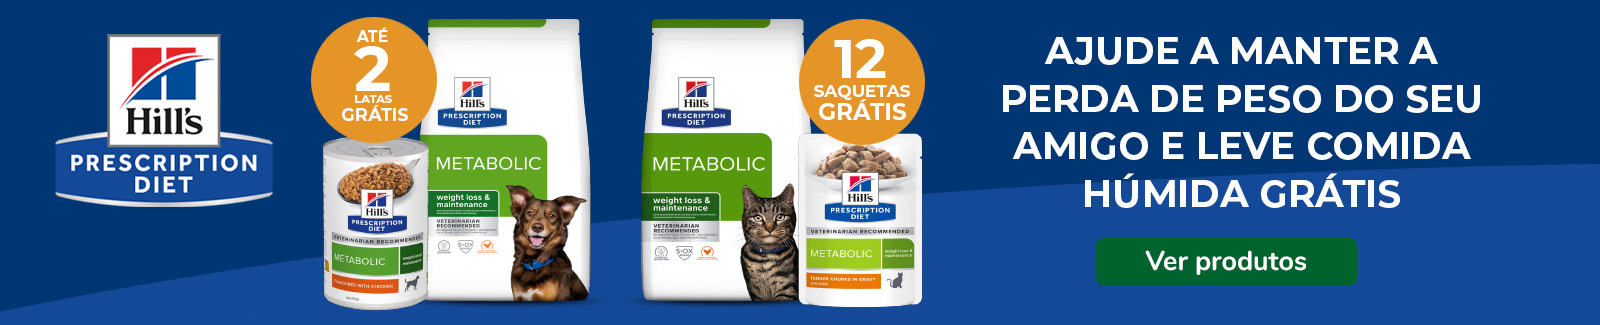 Até 12 saquetas de comida húmida grátis em rações Hill's Prescription Diet Metabolic para cães e gatos